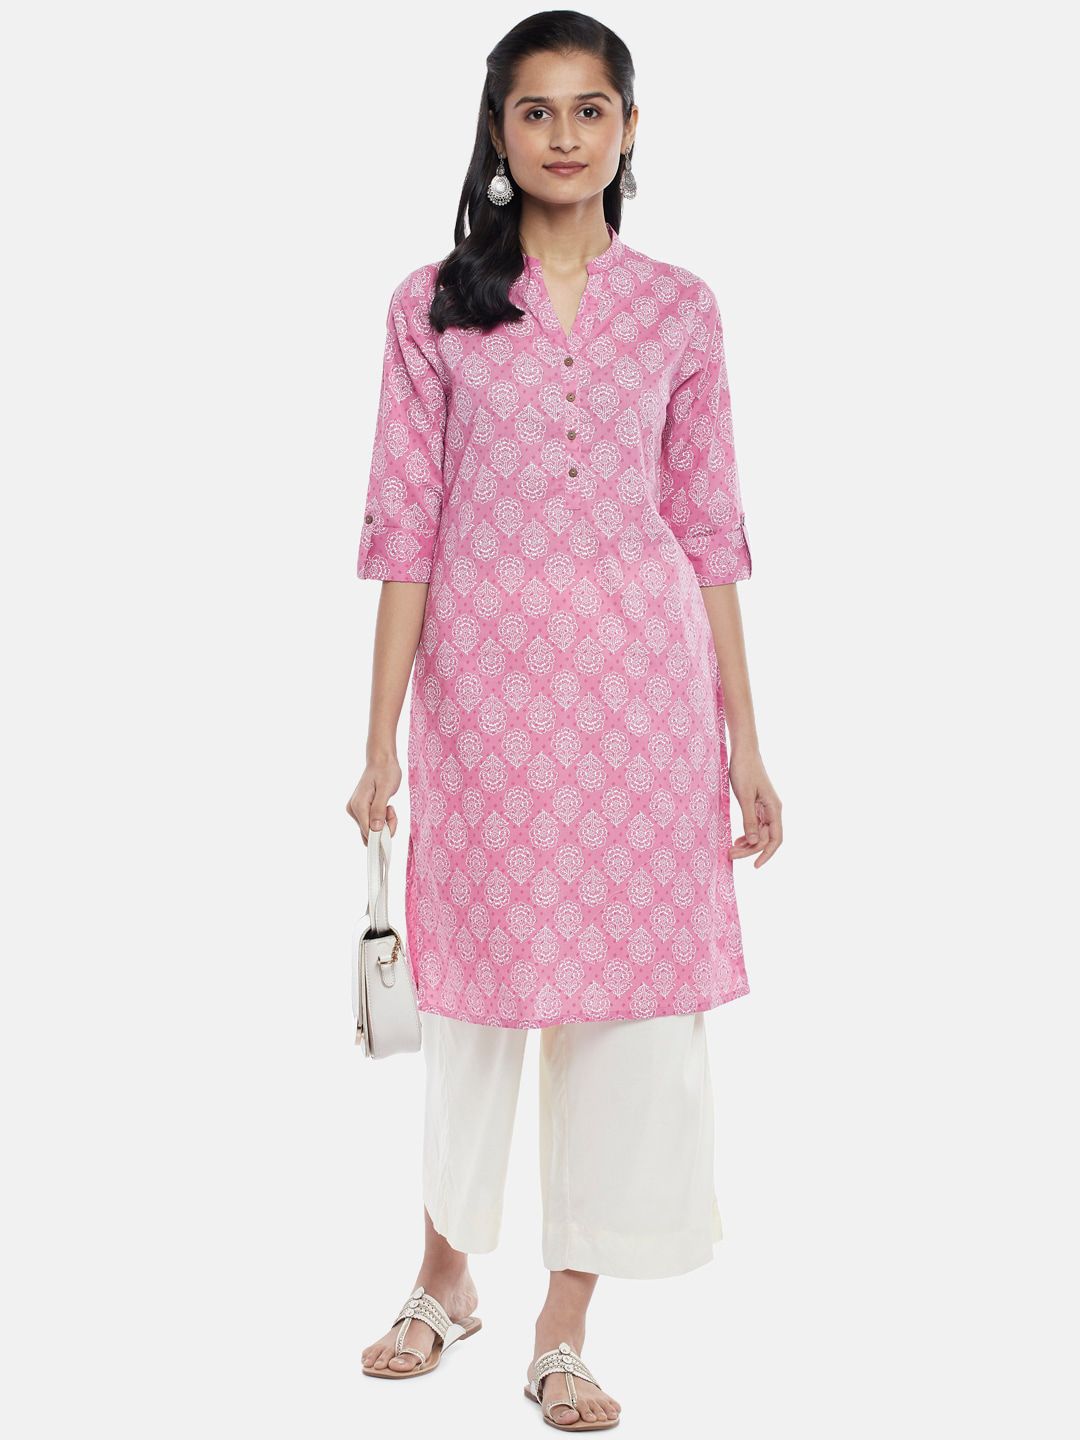 RANGMANCH BY PANTALOONS Women Pink & White Ethnic Motifs Printed Cotton Kurta Price in India